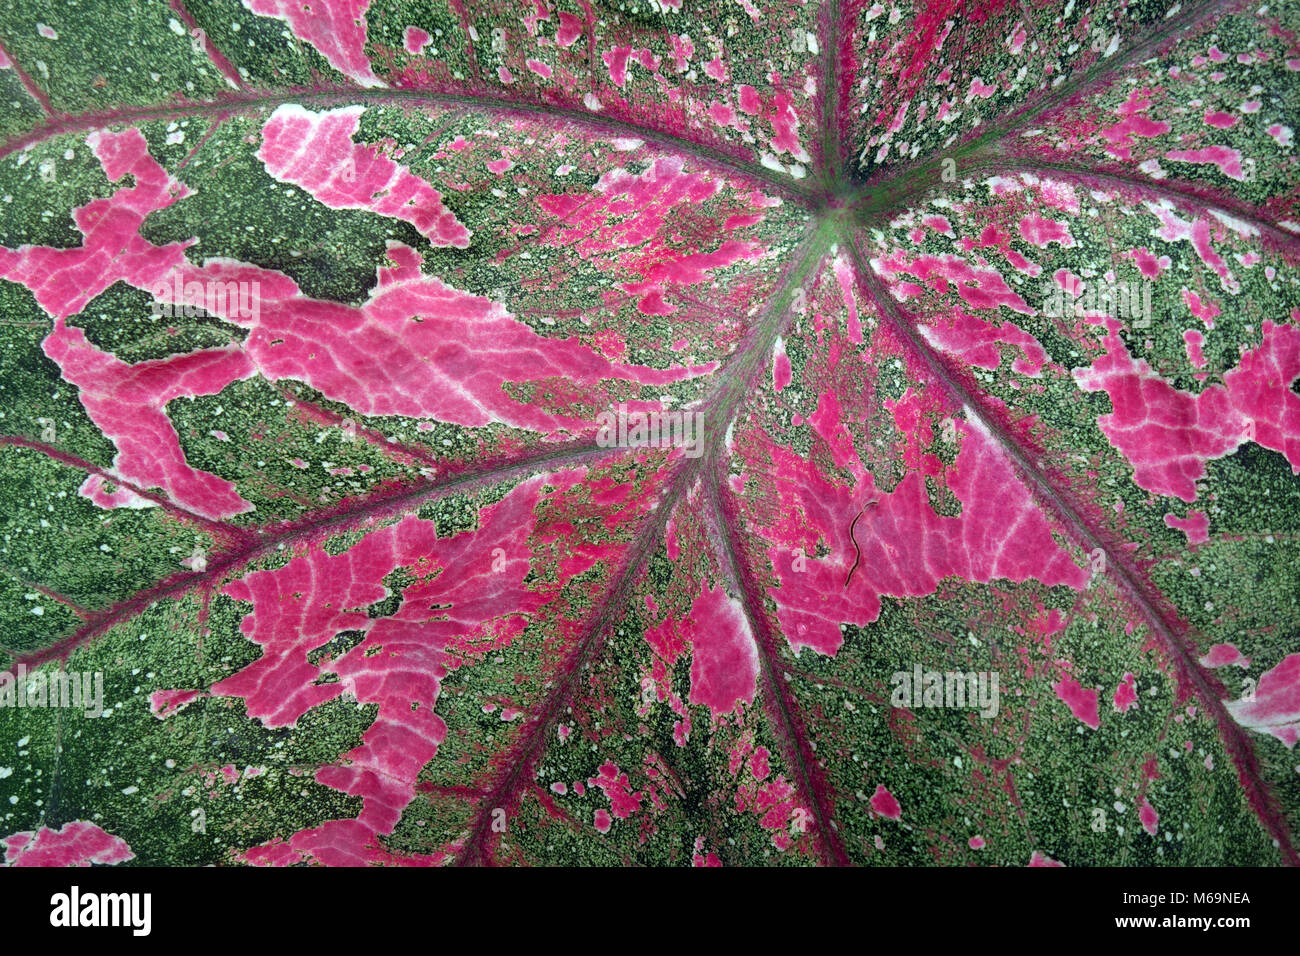 Détail de Caladium rose et vert feuille panachée Banque D'Images